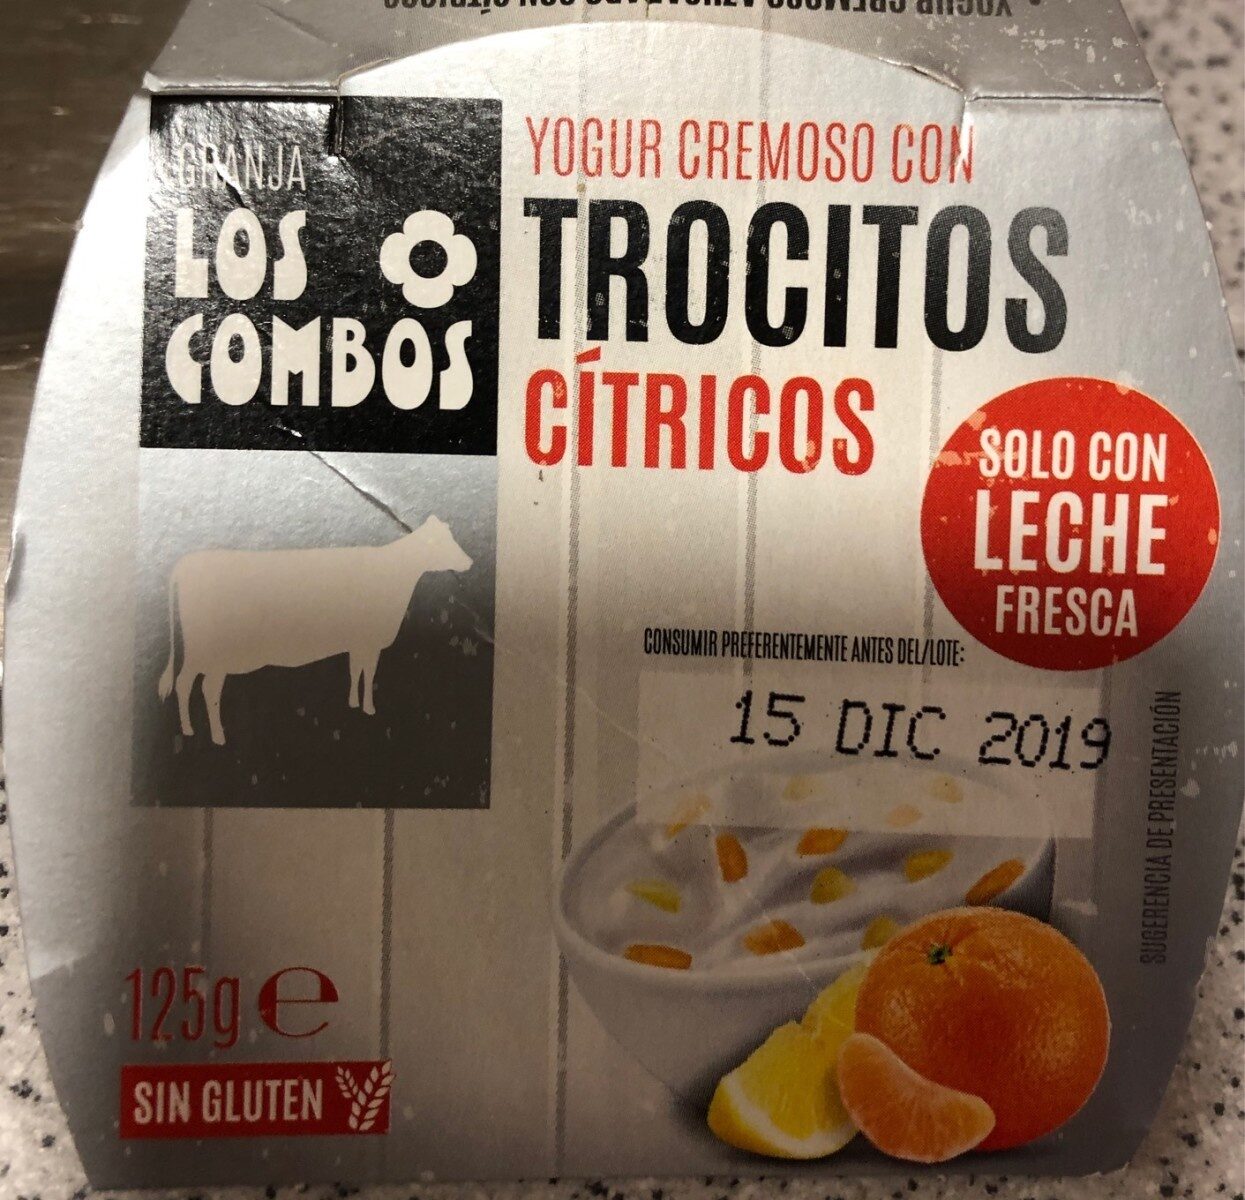 Yogur cremoso con trocitos cítricos - Product - es